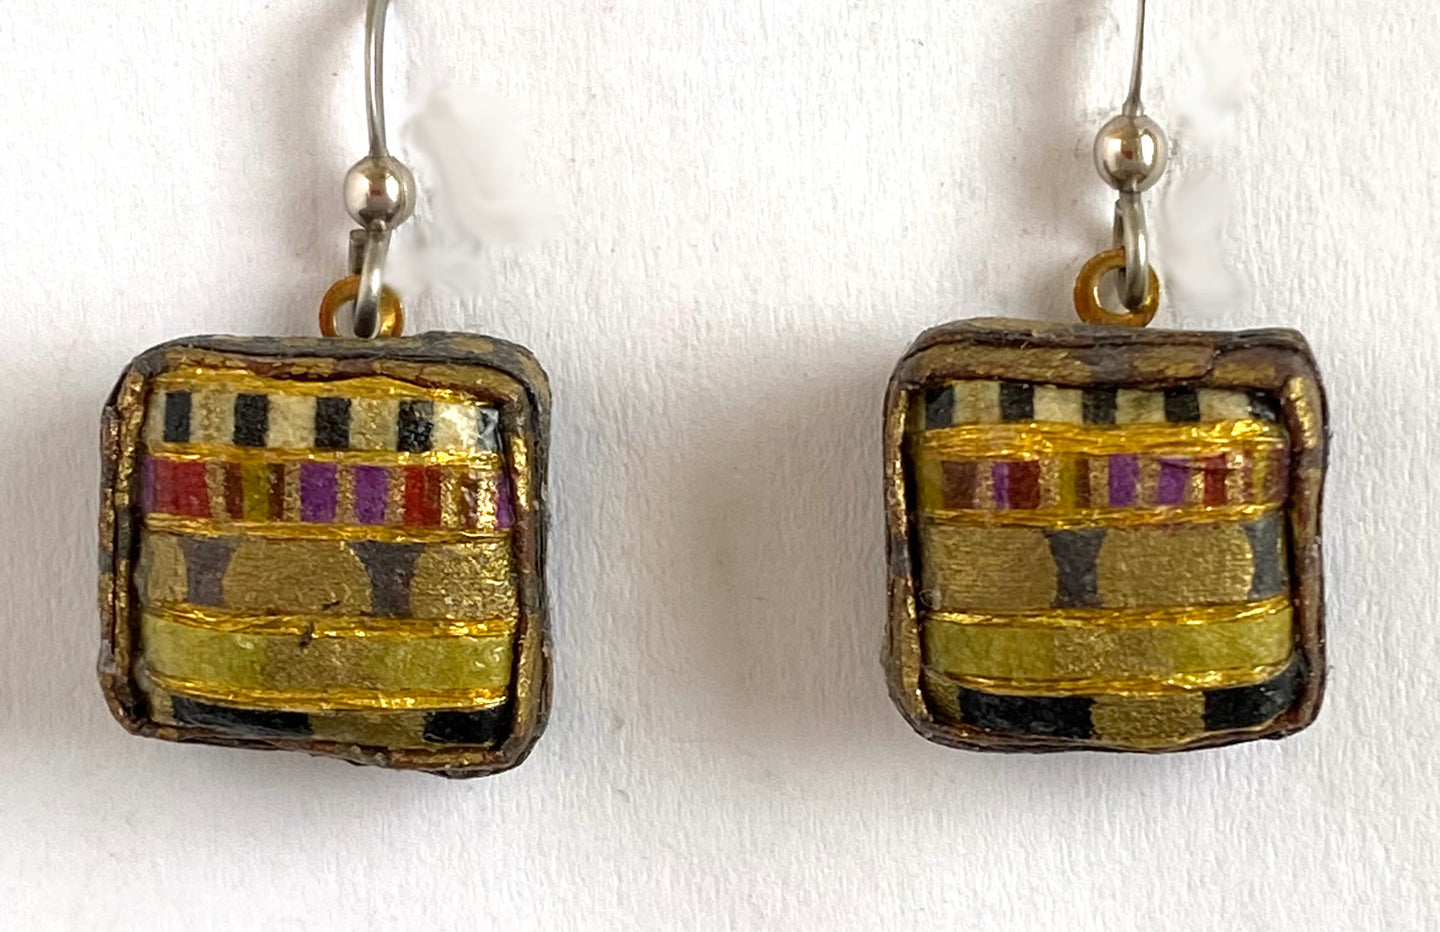 63. Square Earring: Klimt